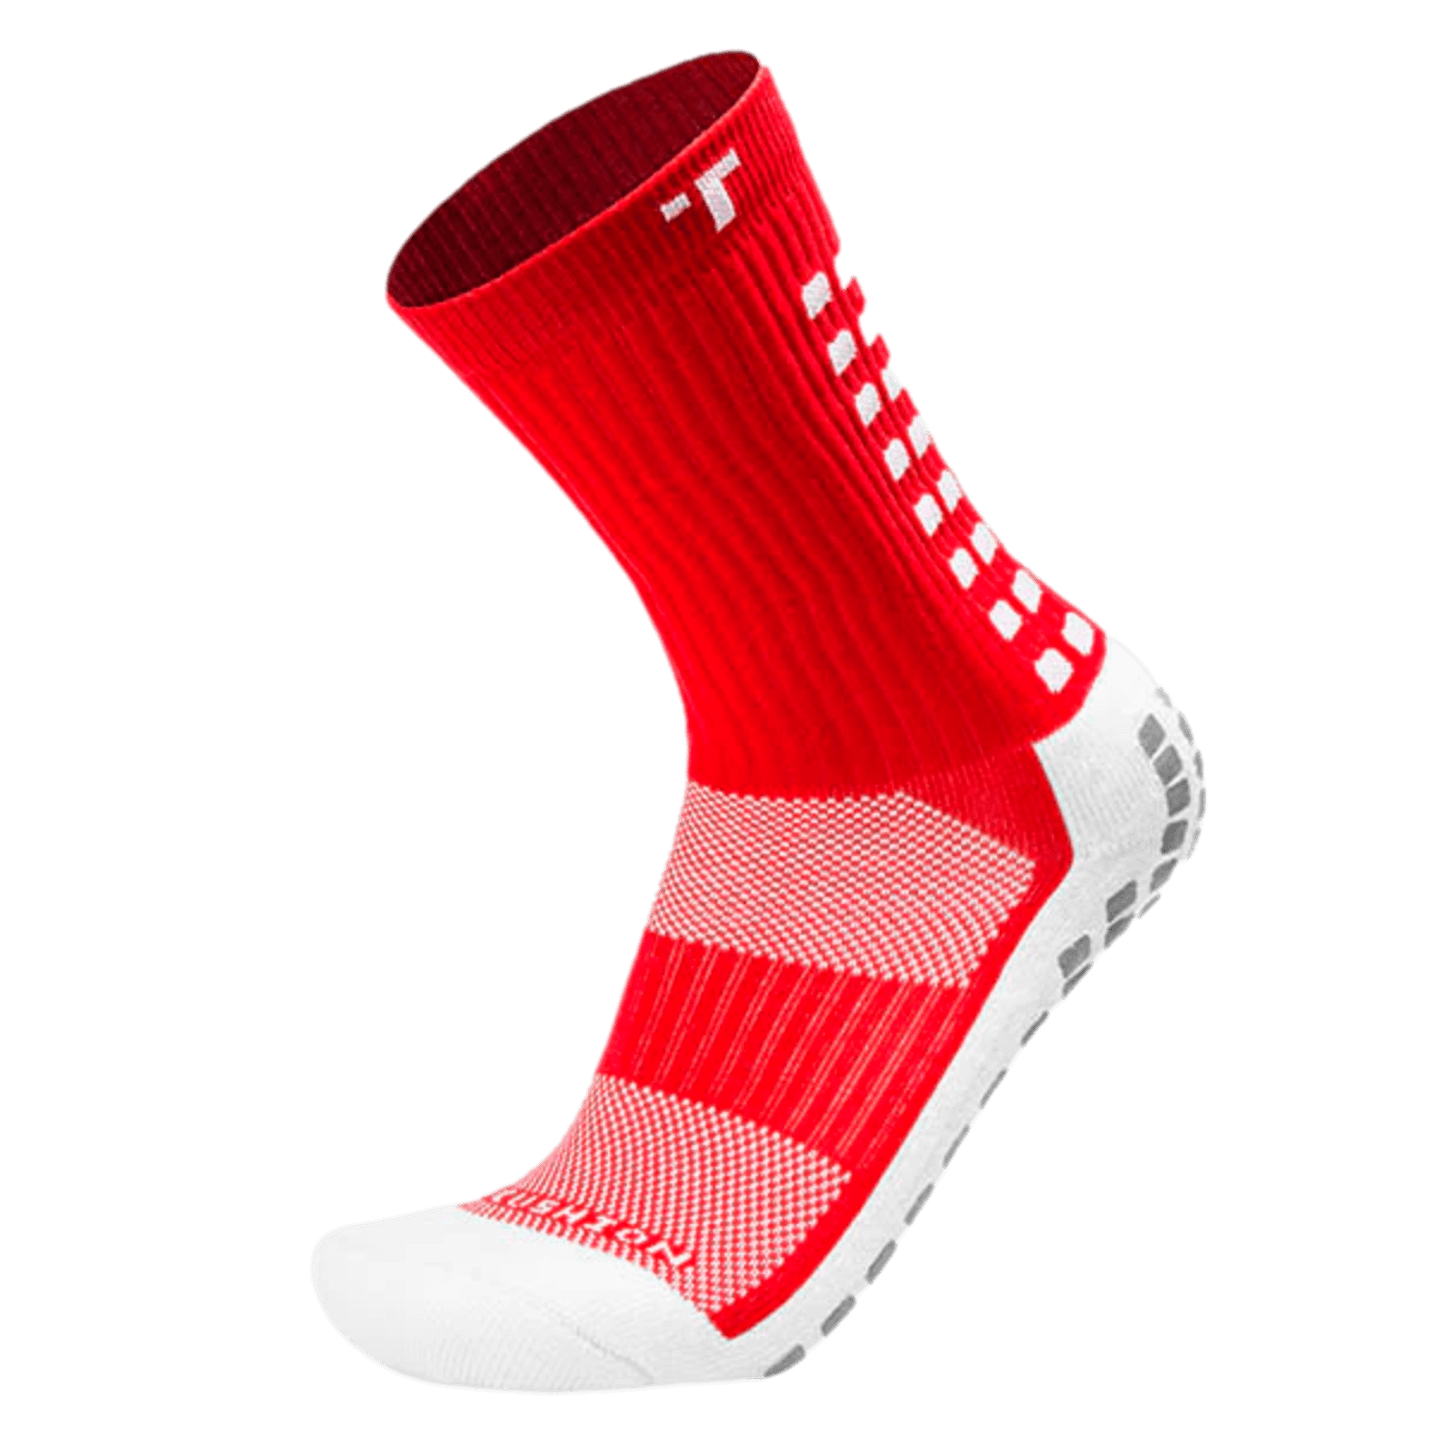 Trusox 3.0 calcetines acolchados con agarre a media pantorrilla